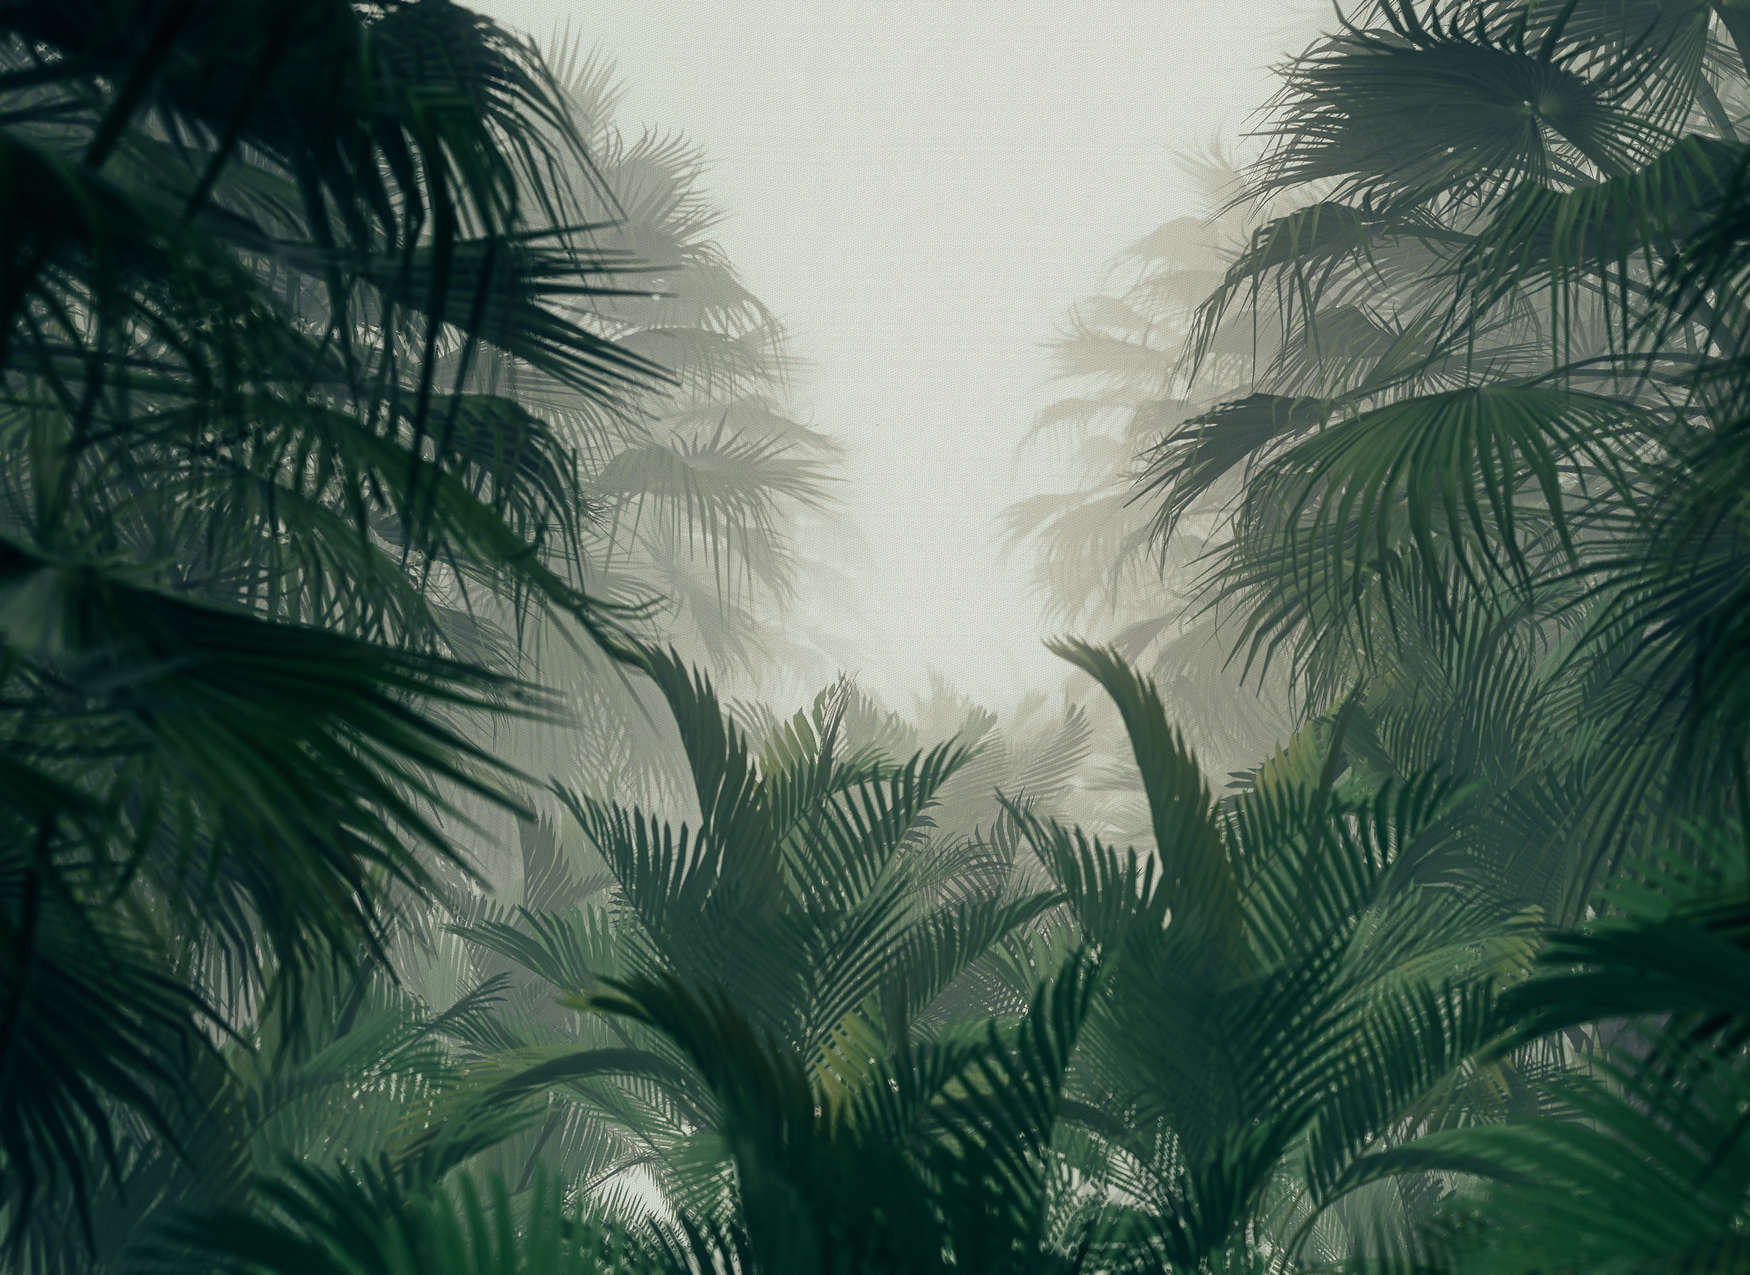             Fototapete mit Dschungelblick in der Regenzeit – Grün, Grau
        